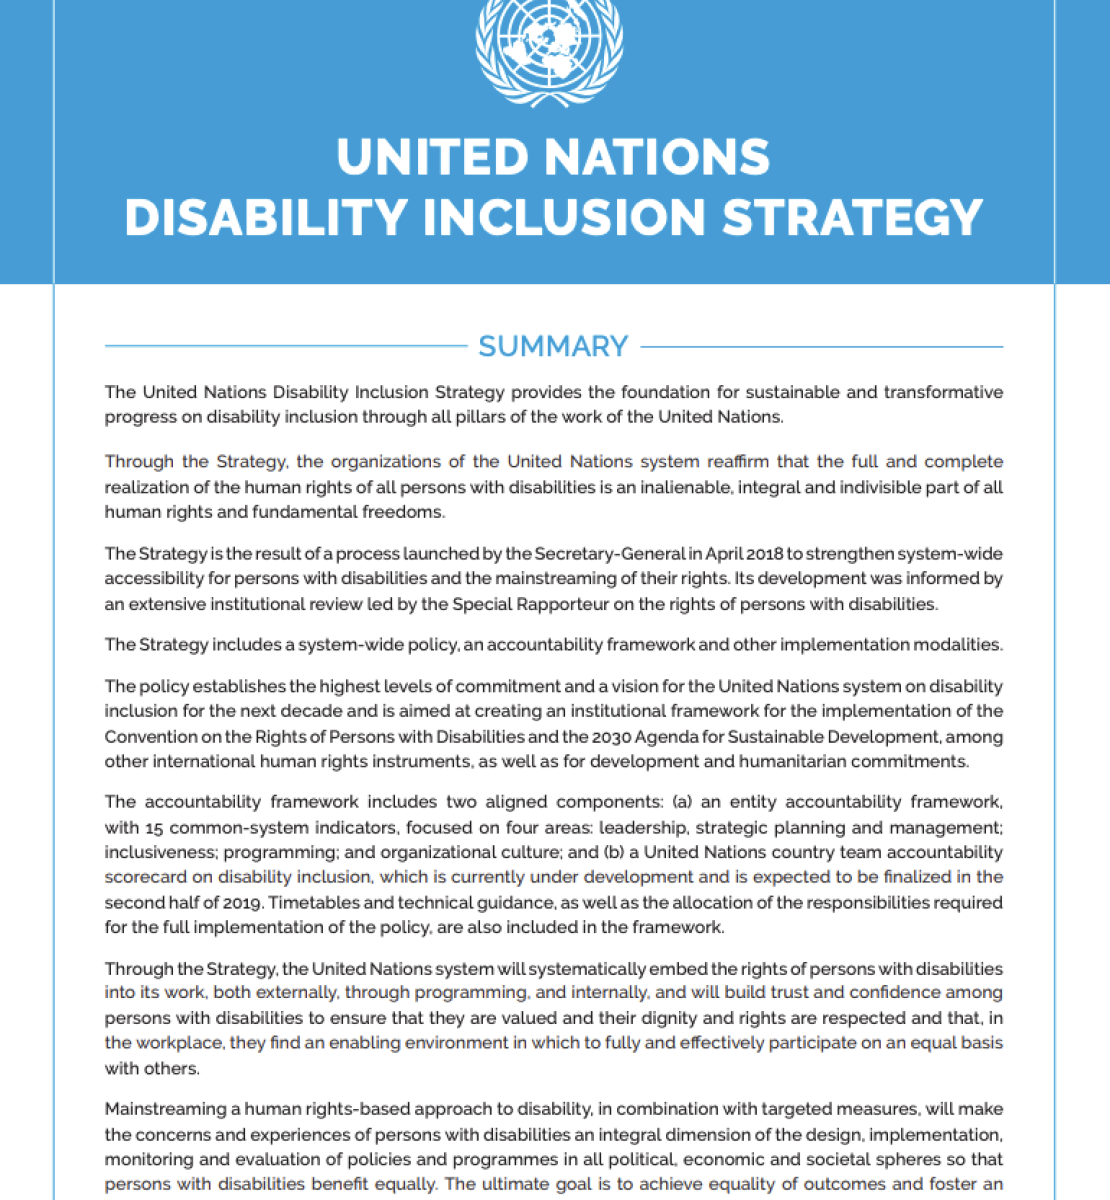 La primera página del manual de inclusión de la discapacidad con el logotipo de las Naciones Unidas en la parte superior.